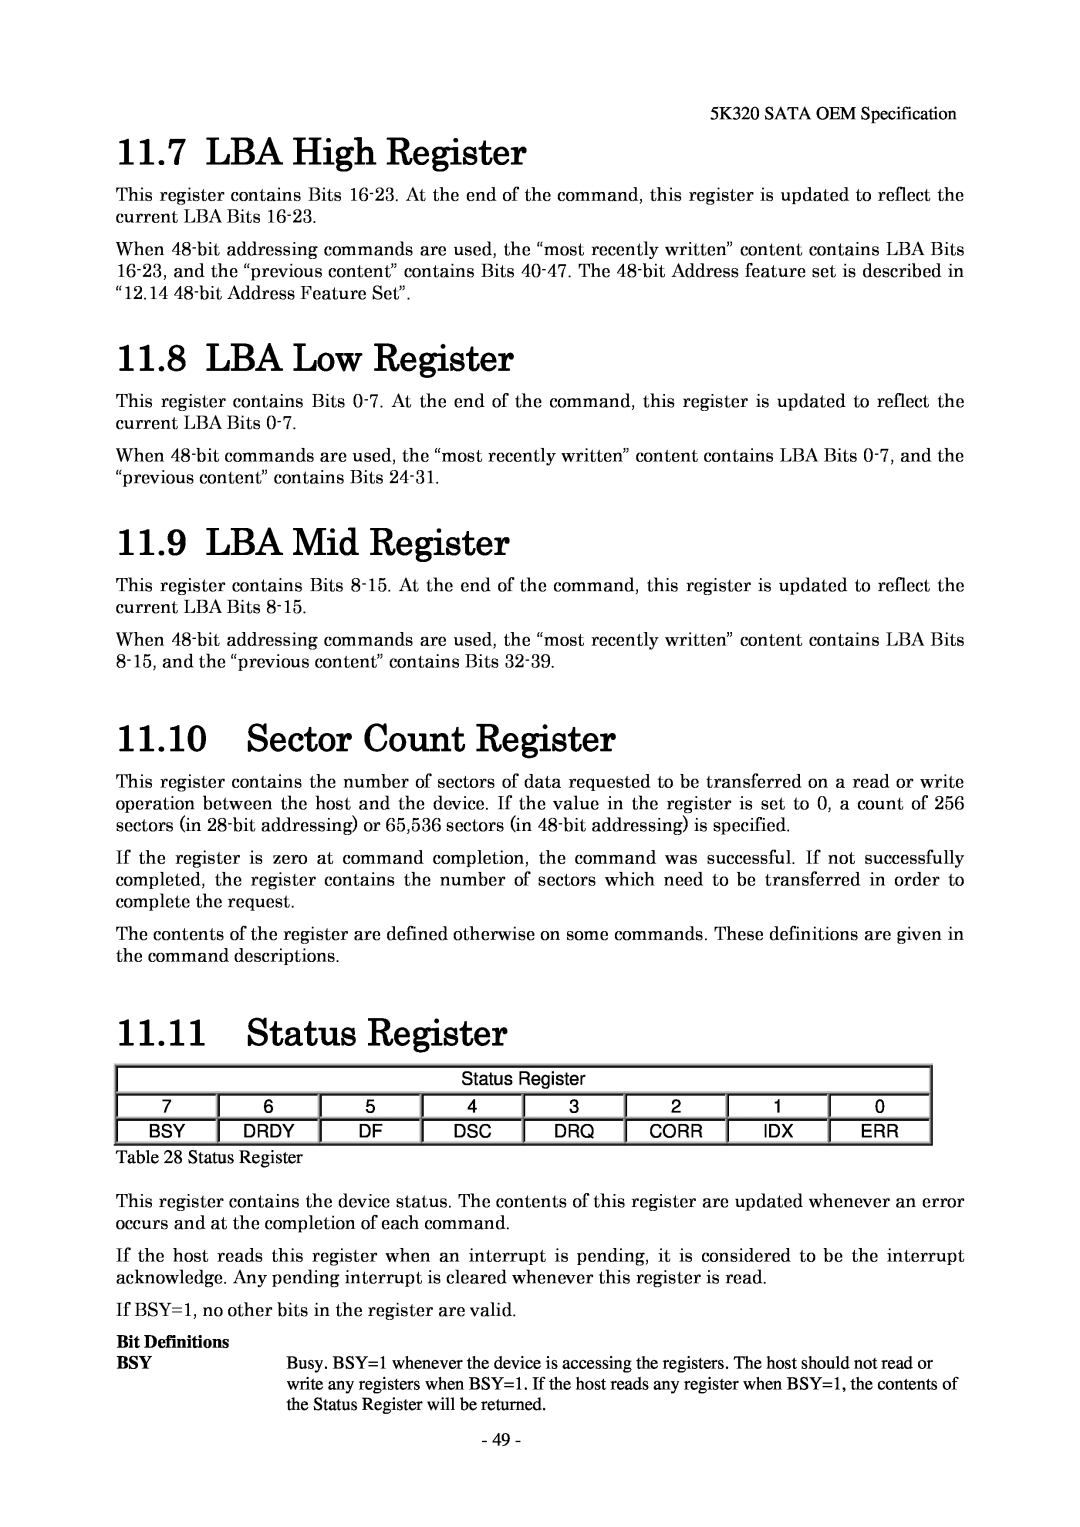 Hitachi HTS543280L9SA00 LBA High Register, LBA Low Register, LBA Mid Register, 11.10Sector Count Register, Status Register 